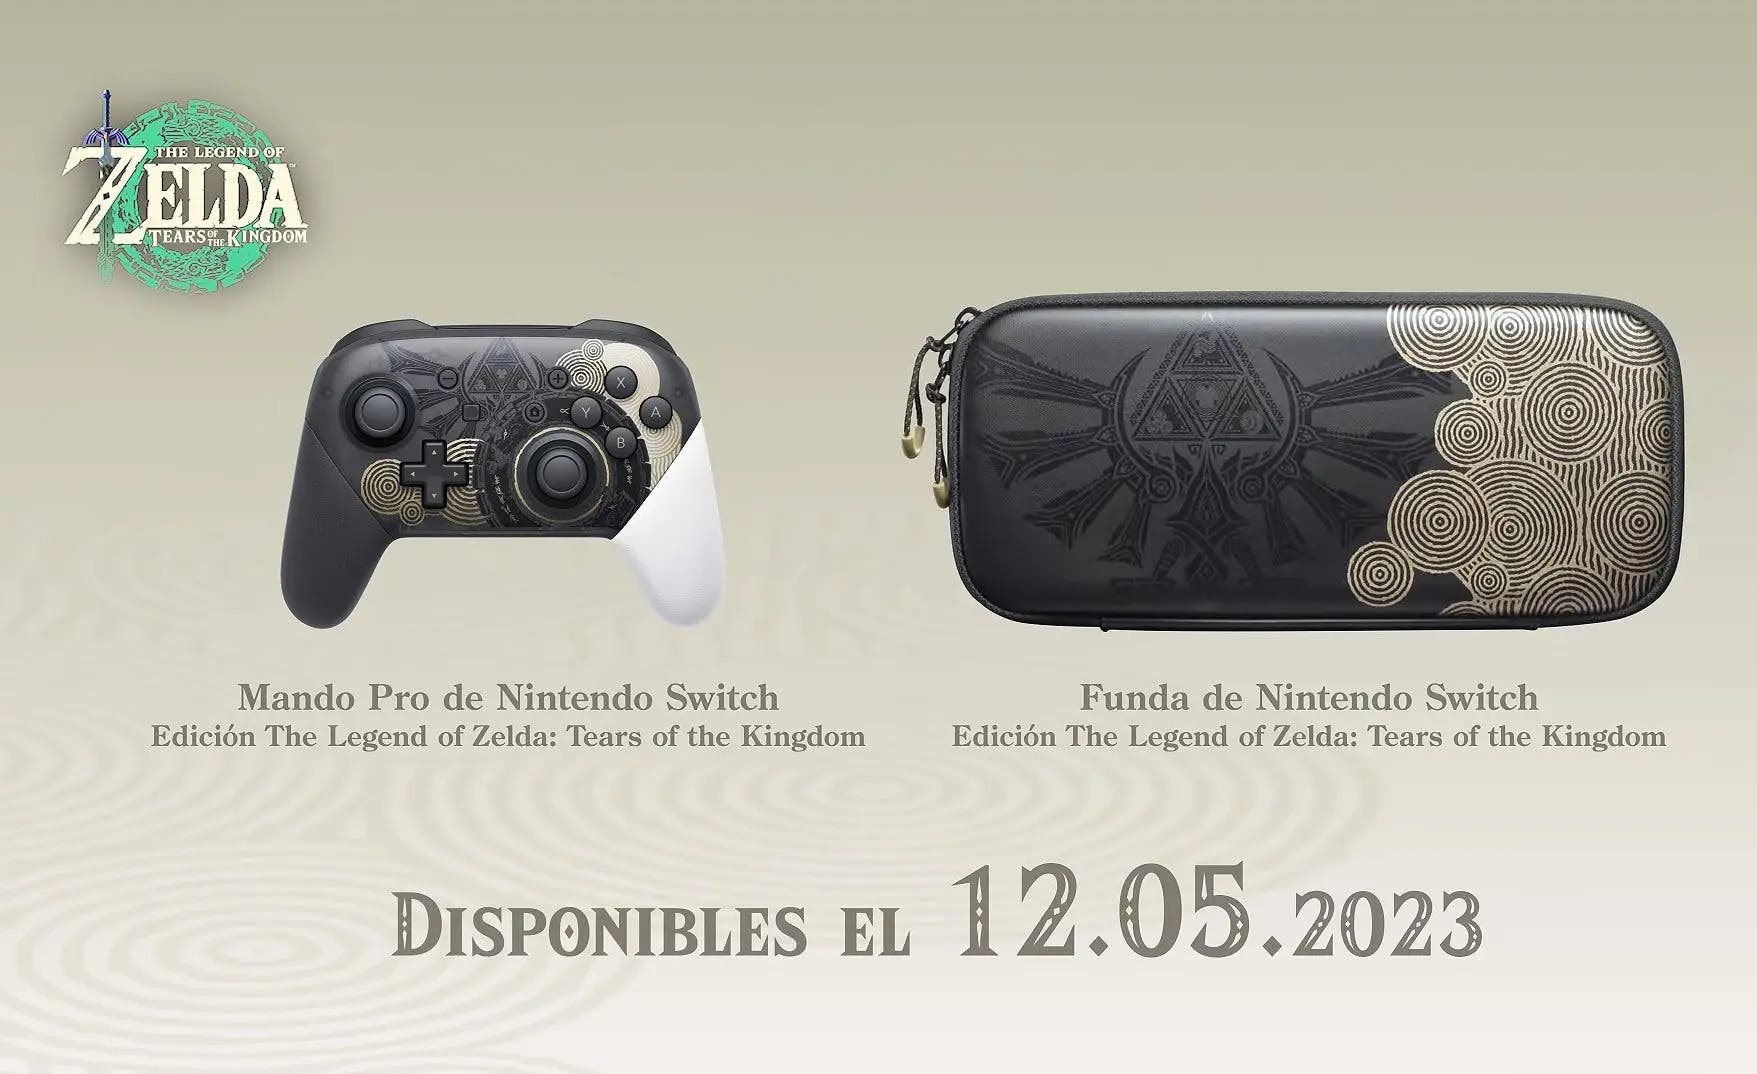 Regresa a  el nuevo mando Pro de Zelda: Tears of the Kingdom para  Nintendo Switch. Y lo hace en oferta a su precio más bajo